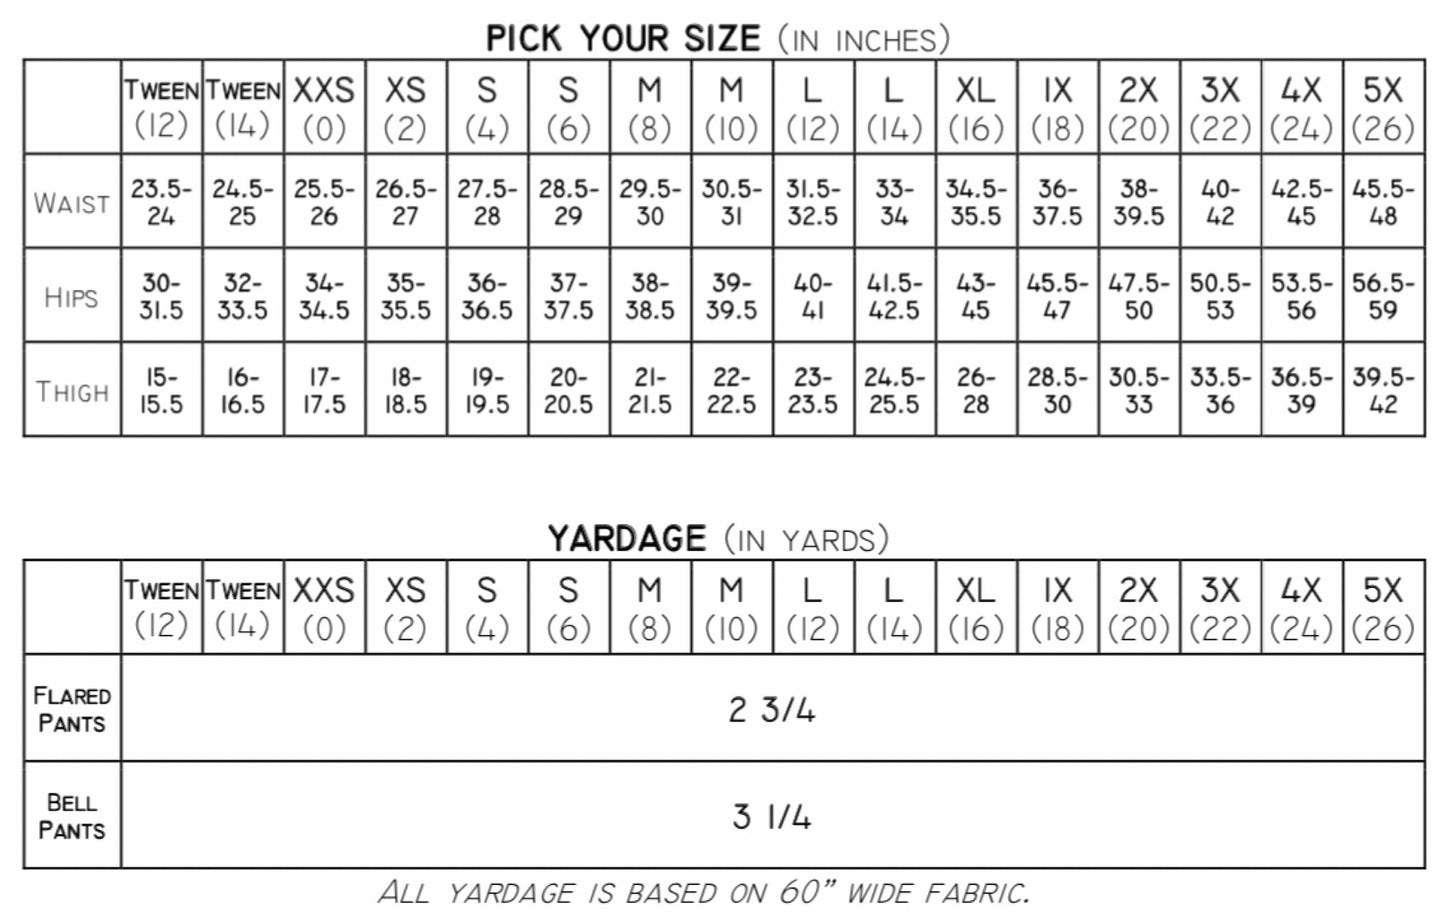 The Zappa Pants PDF Sewing Pattern